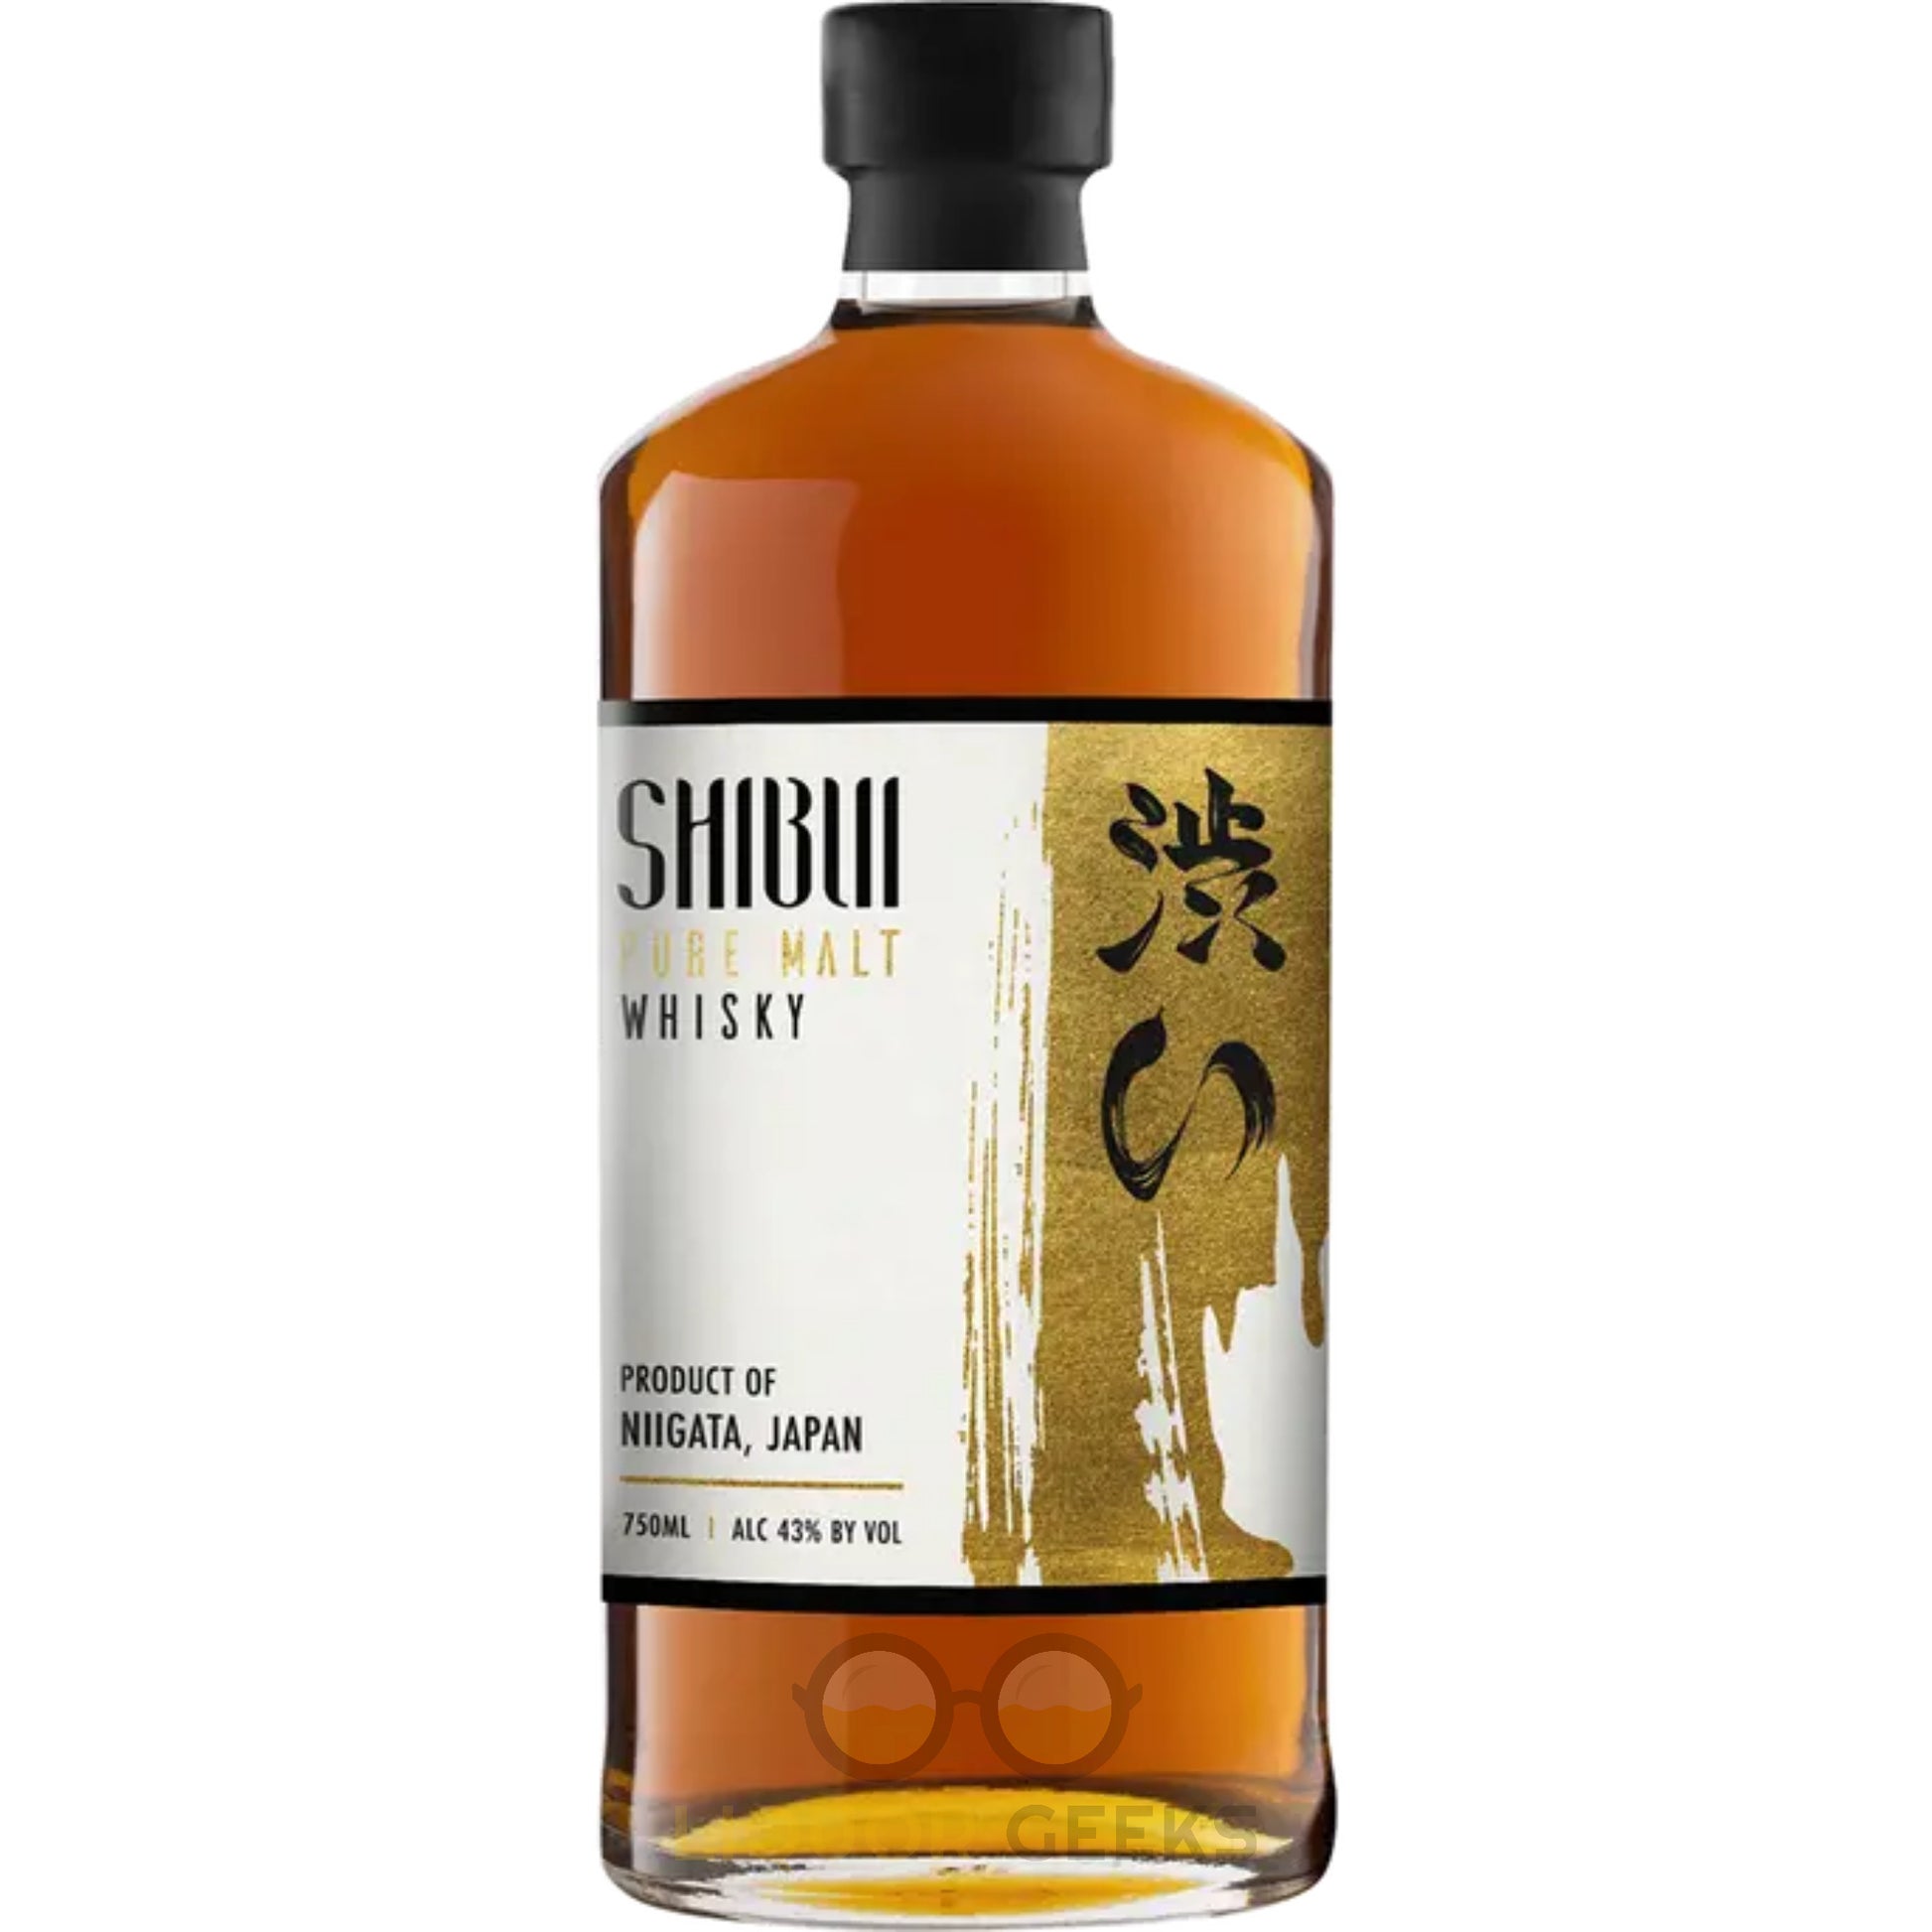 Shibui Pure Malt Japanese Whisky - Liquor Geeks